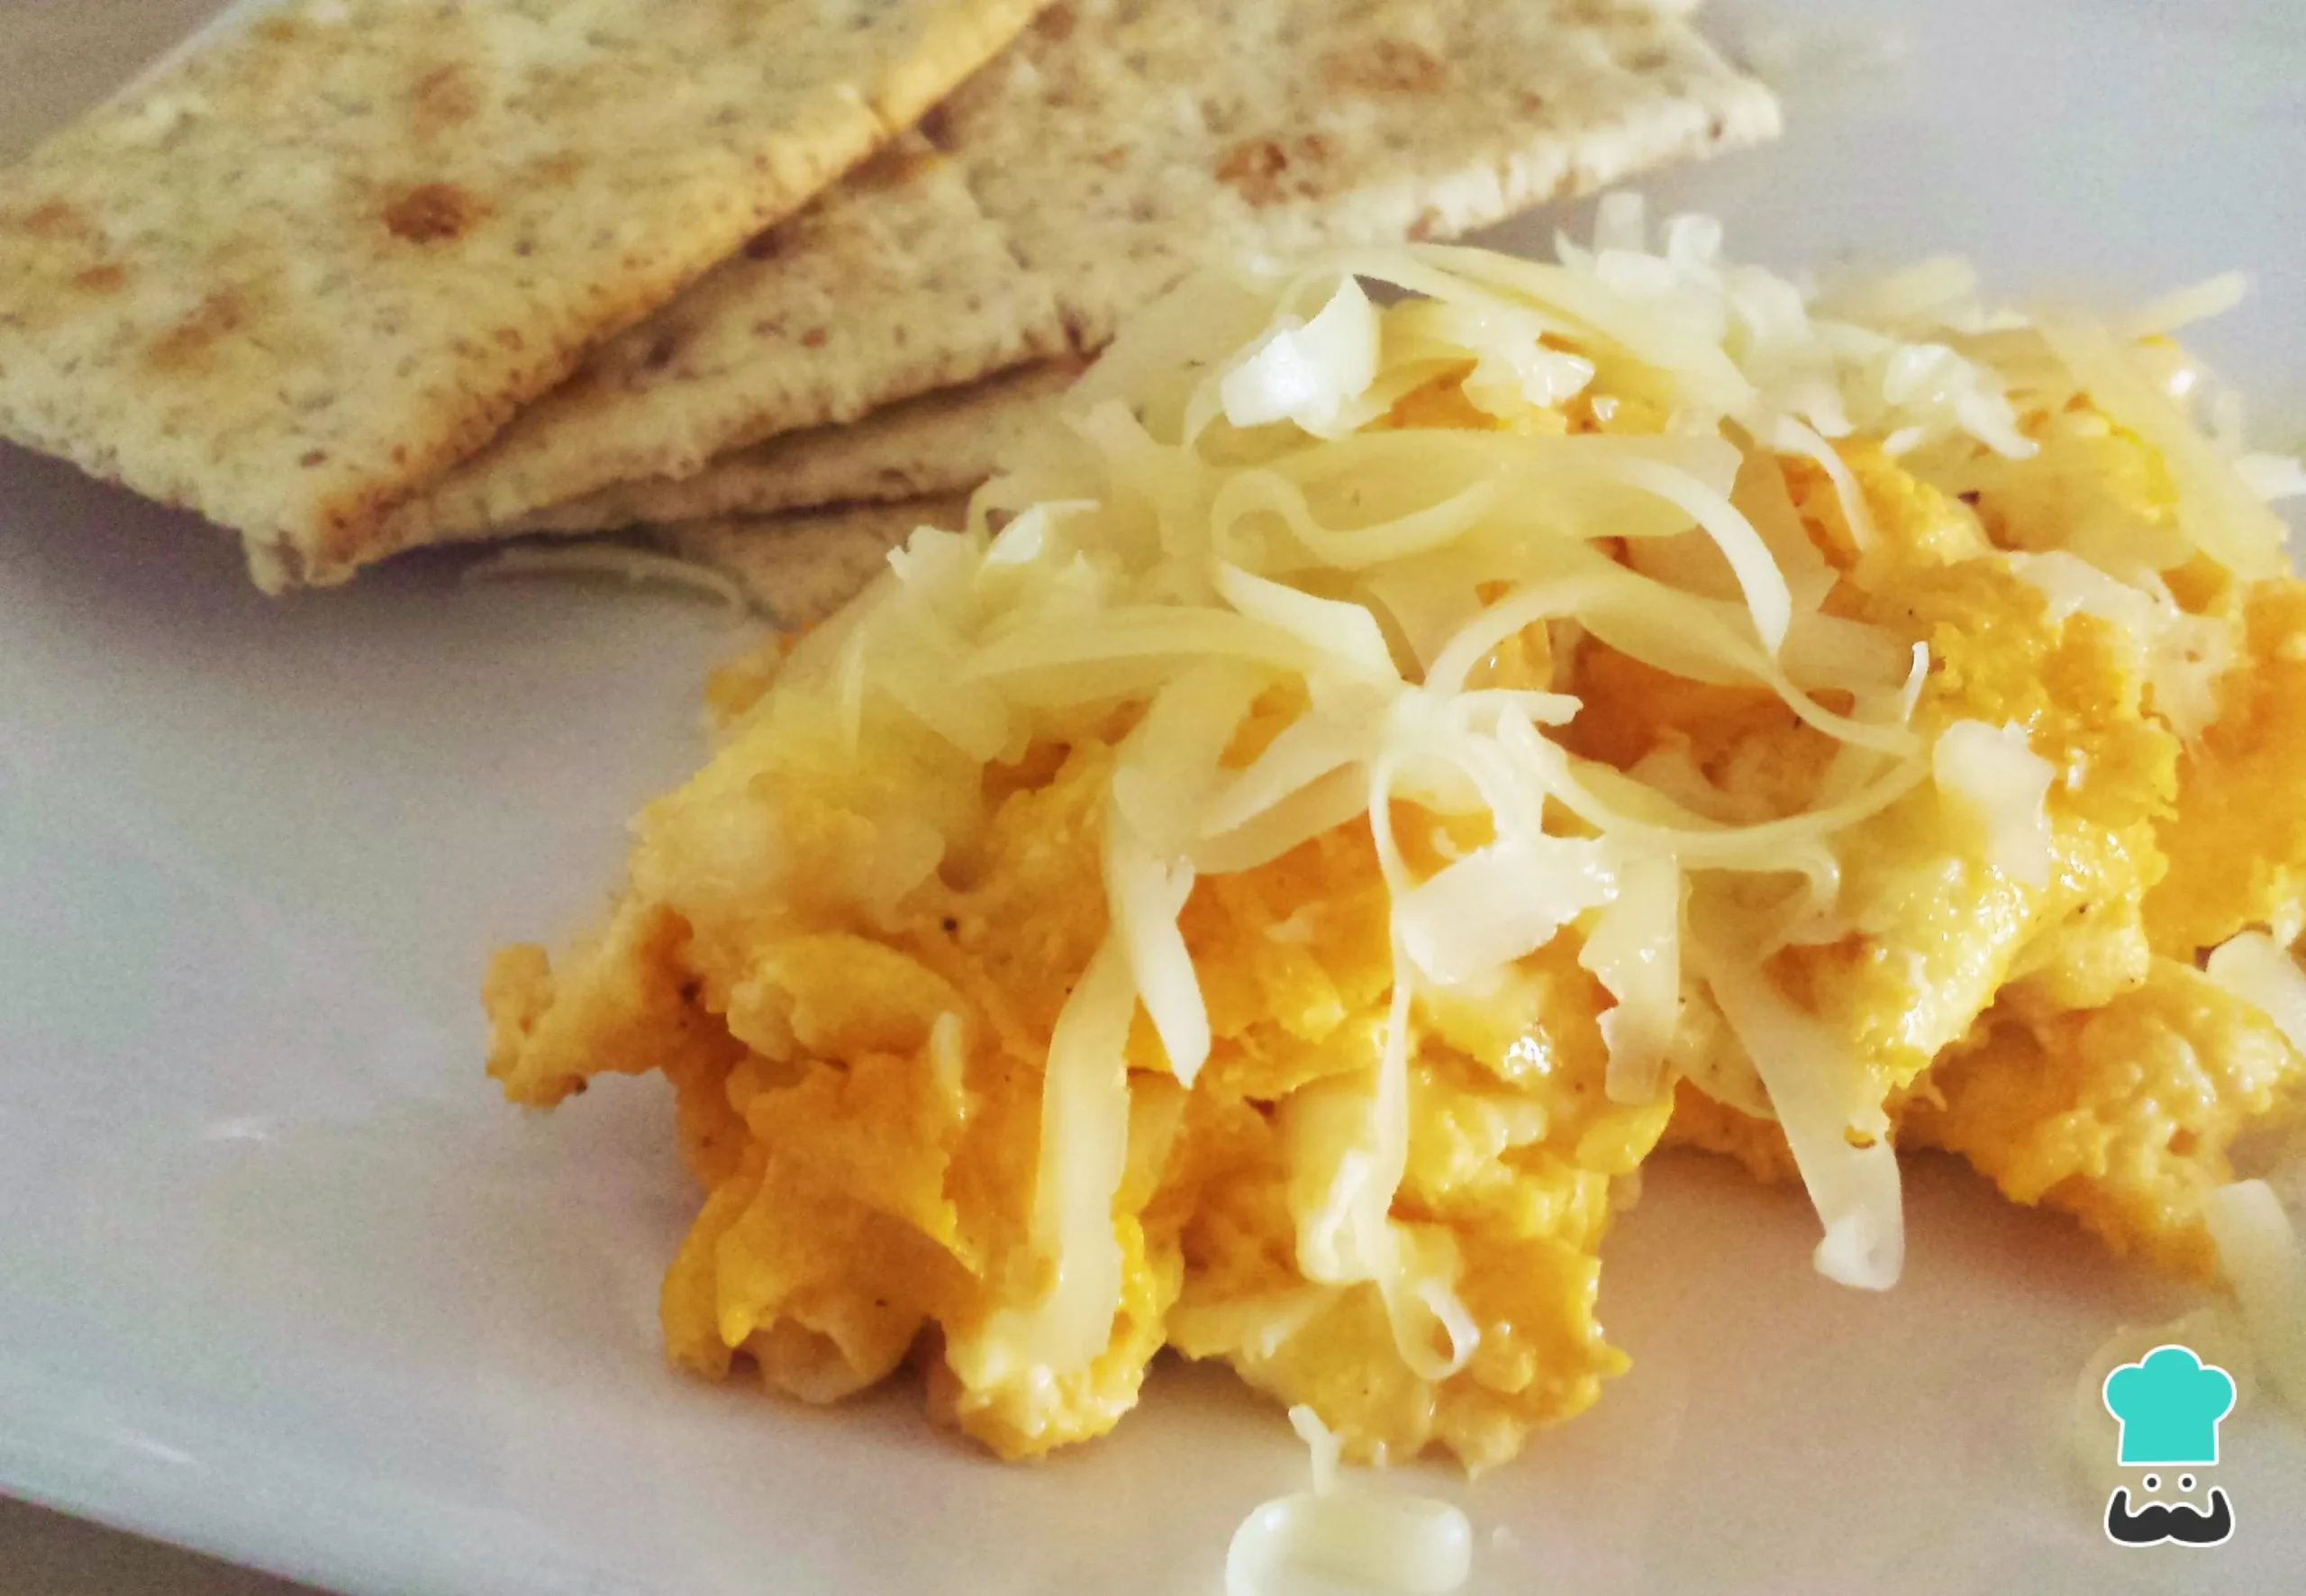 comidas con queso rallado - Cuál es el queso que se usa para rallar